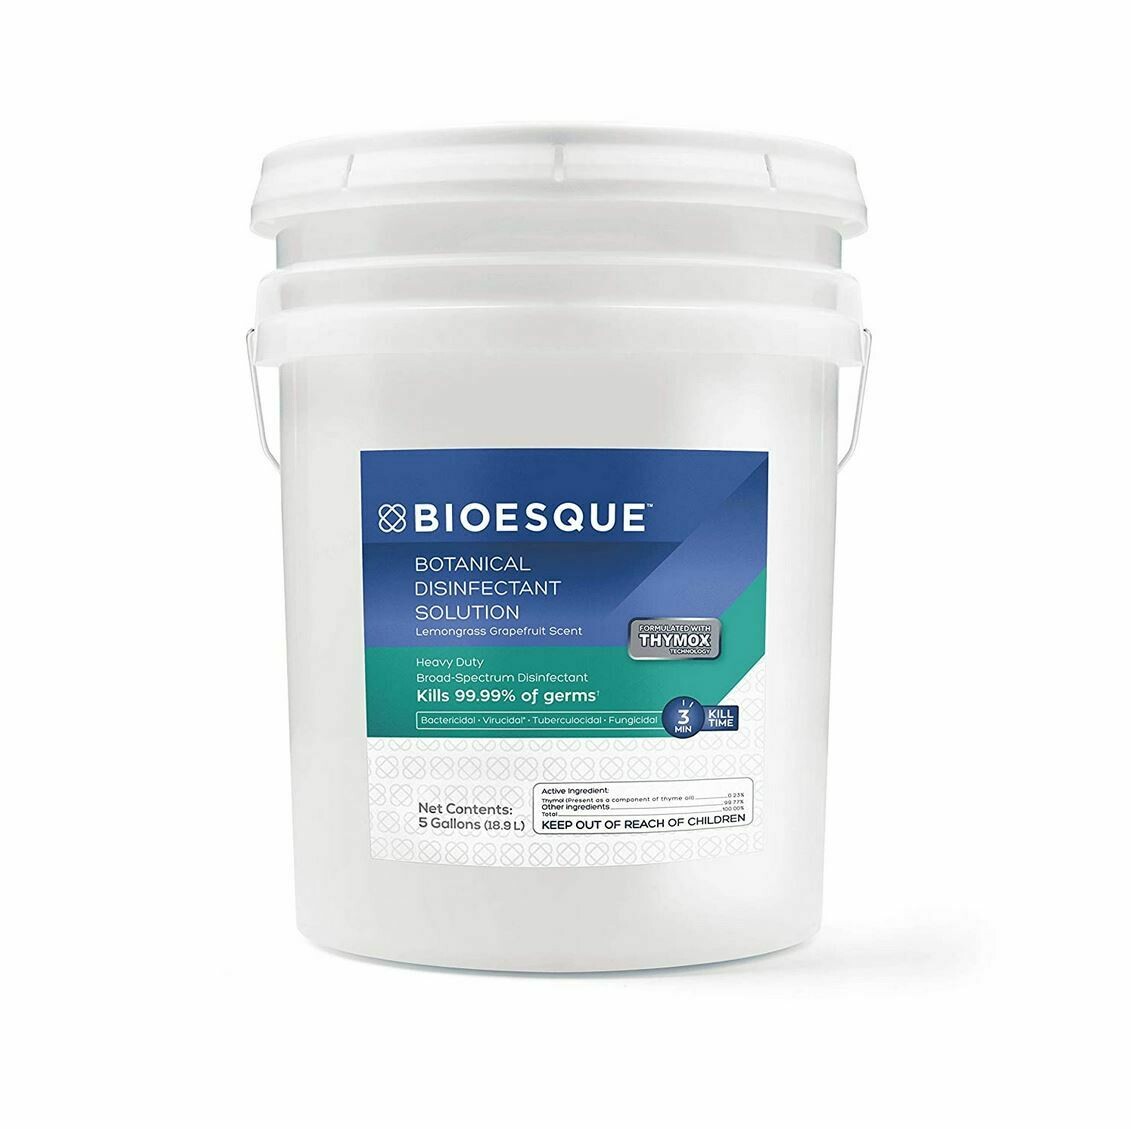 BIOESQUE Botanical Disinfectant Solution - 5 Gallon Pail